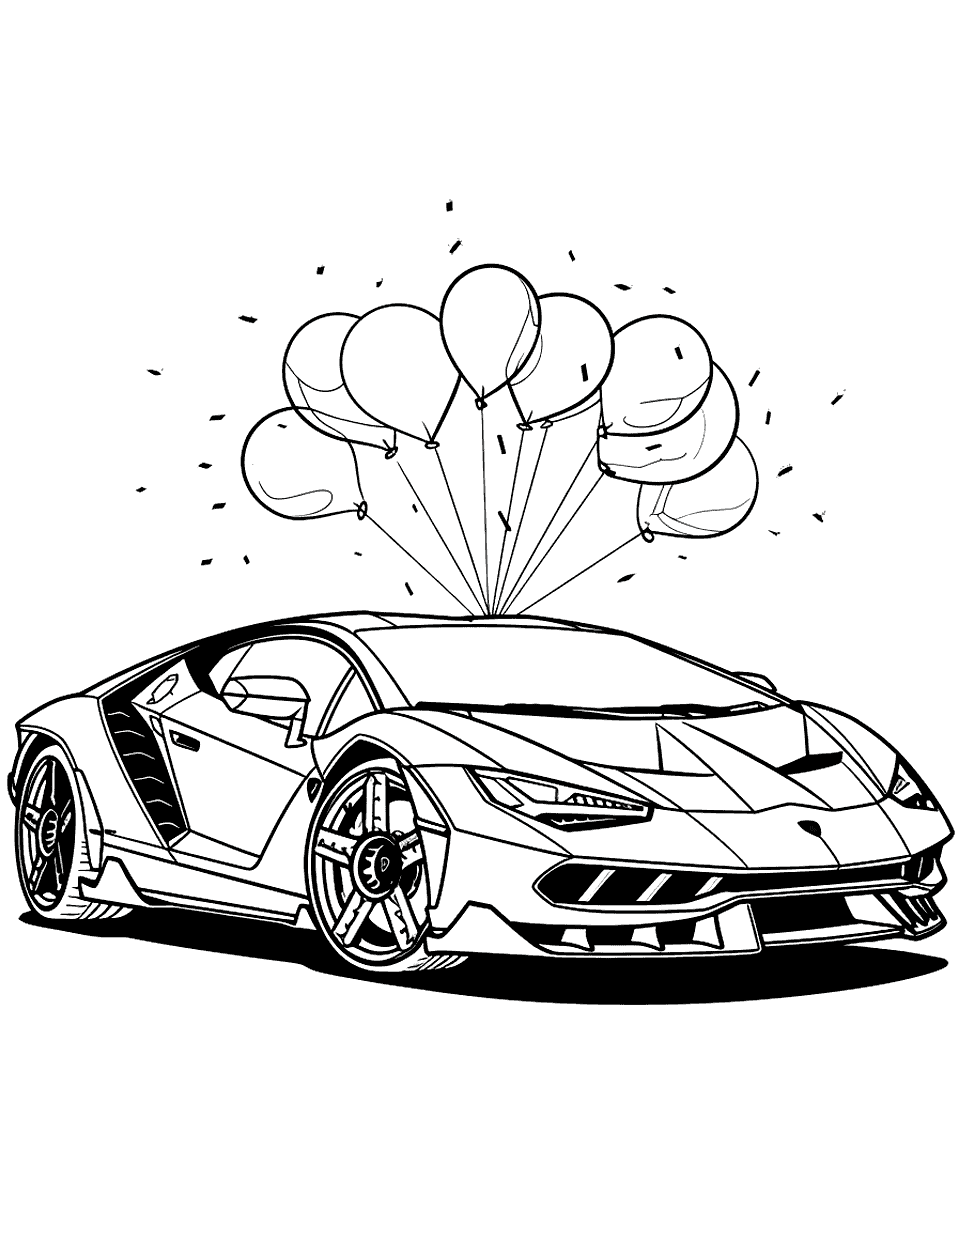 Lamborghini Centenario Celebration Coloring Page - A Lamborghini Centenario with balloons and confetti around it, celebrating an anniversary.